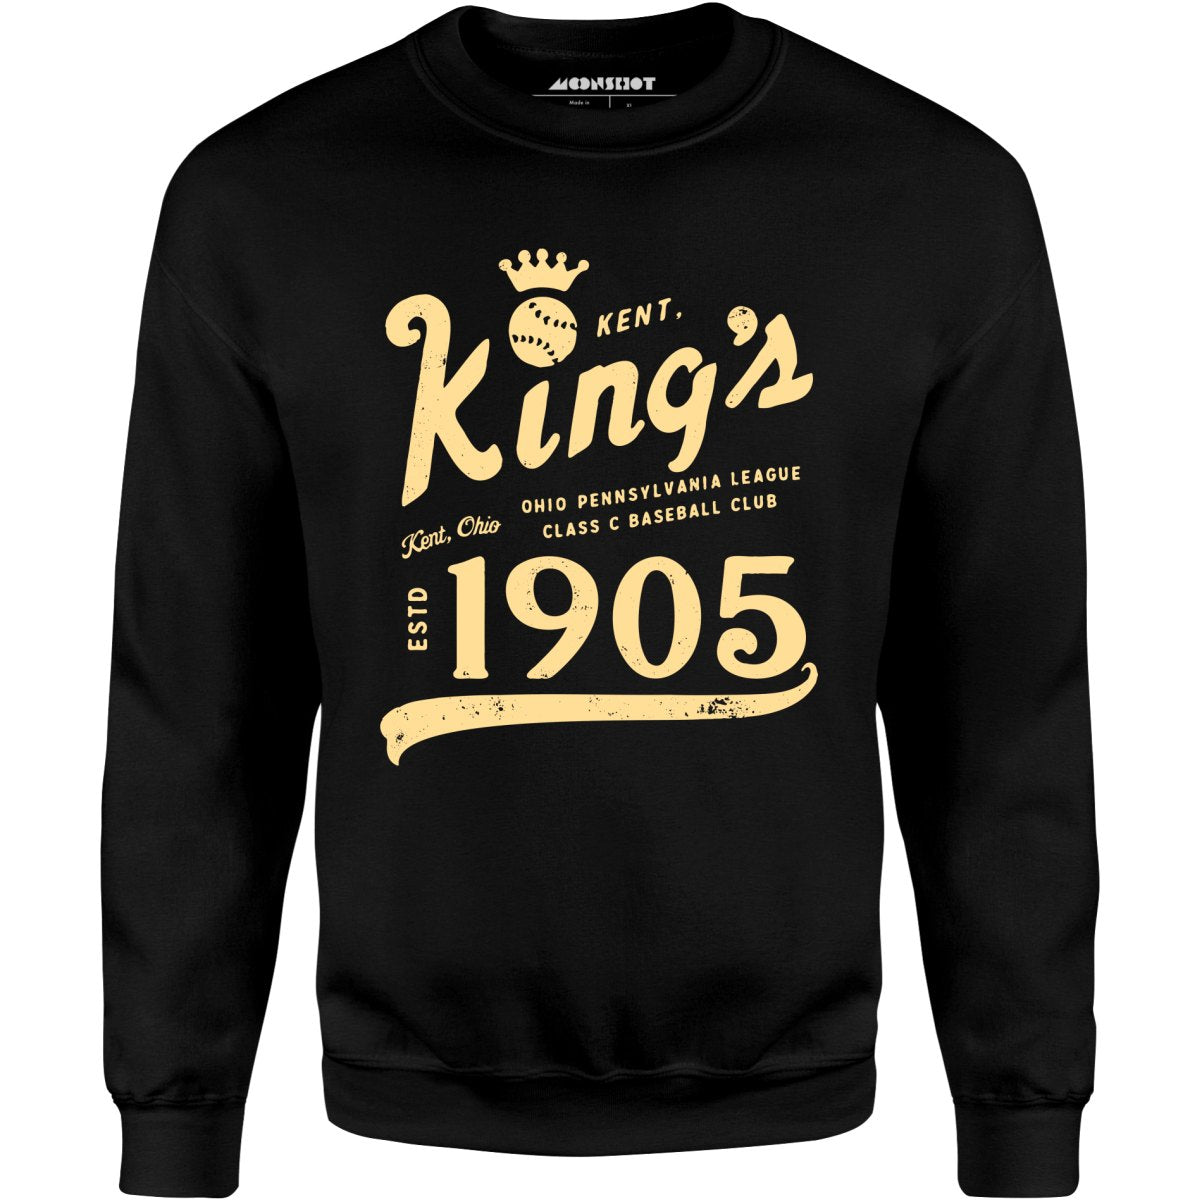 Kent Kings - Ohio - Vintage Defunct Baseball Teams - Unisex Sweatshirt